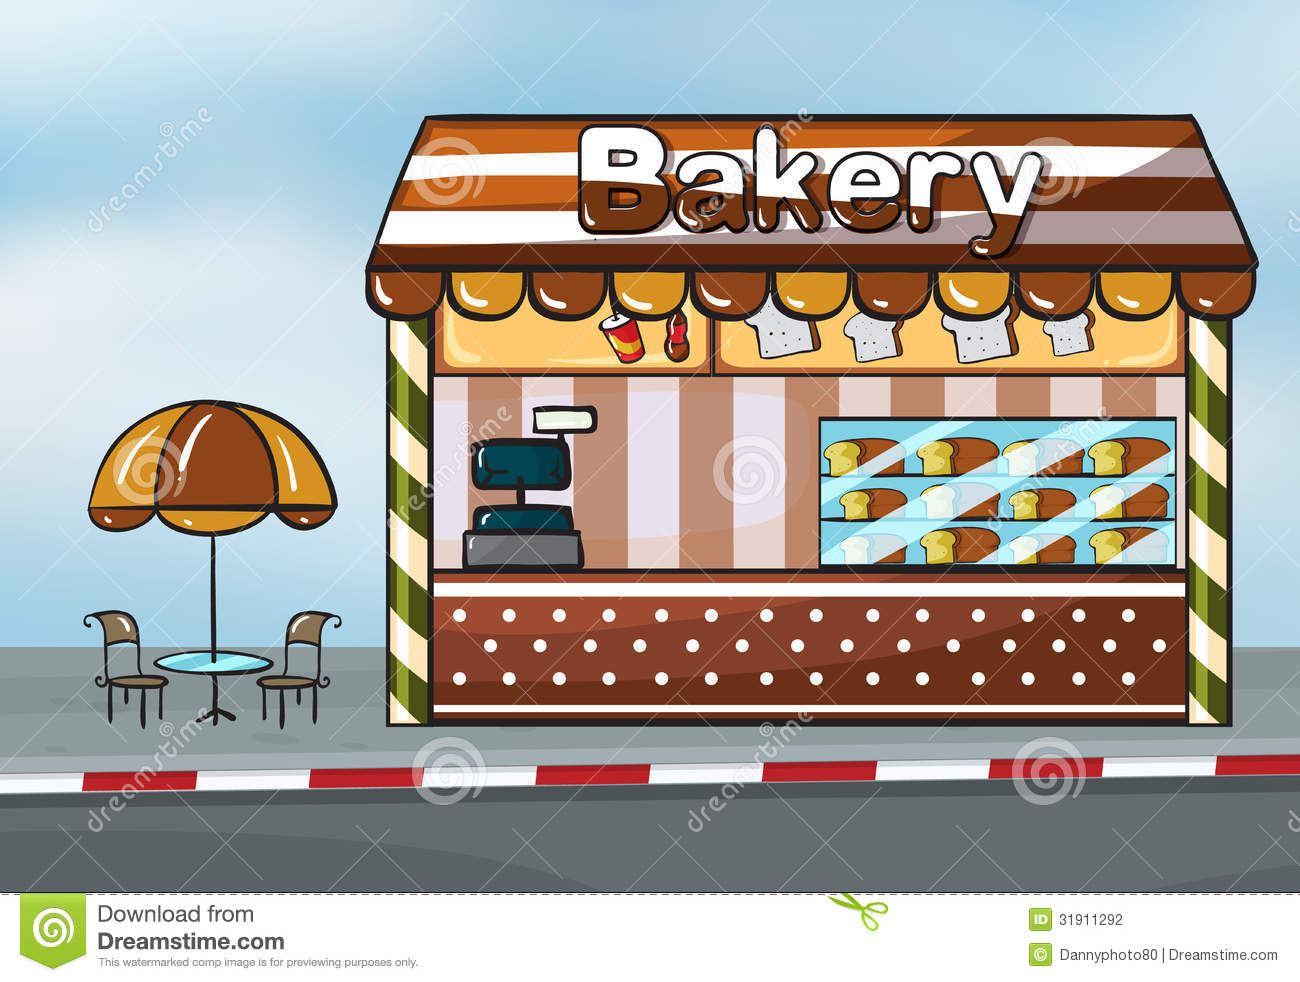 Bakery clipart bakery shop, Bakery bakery shop Transparent